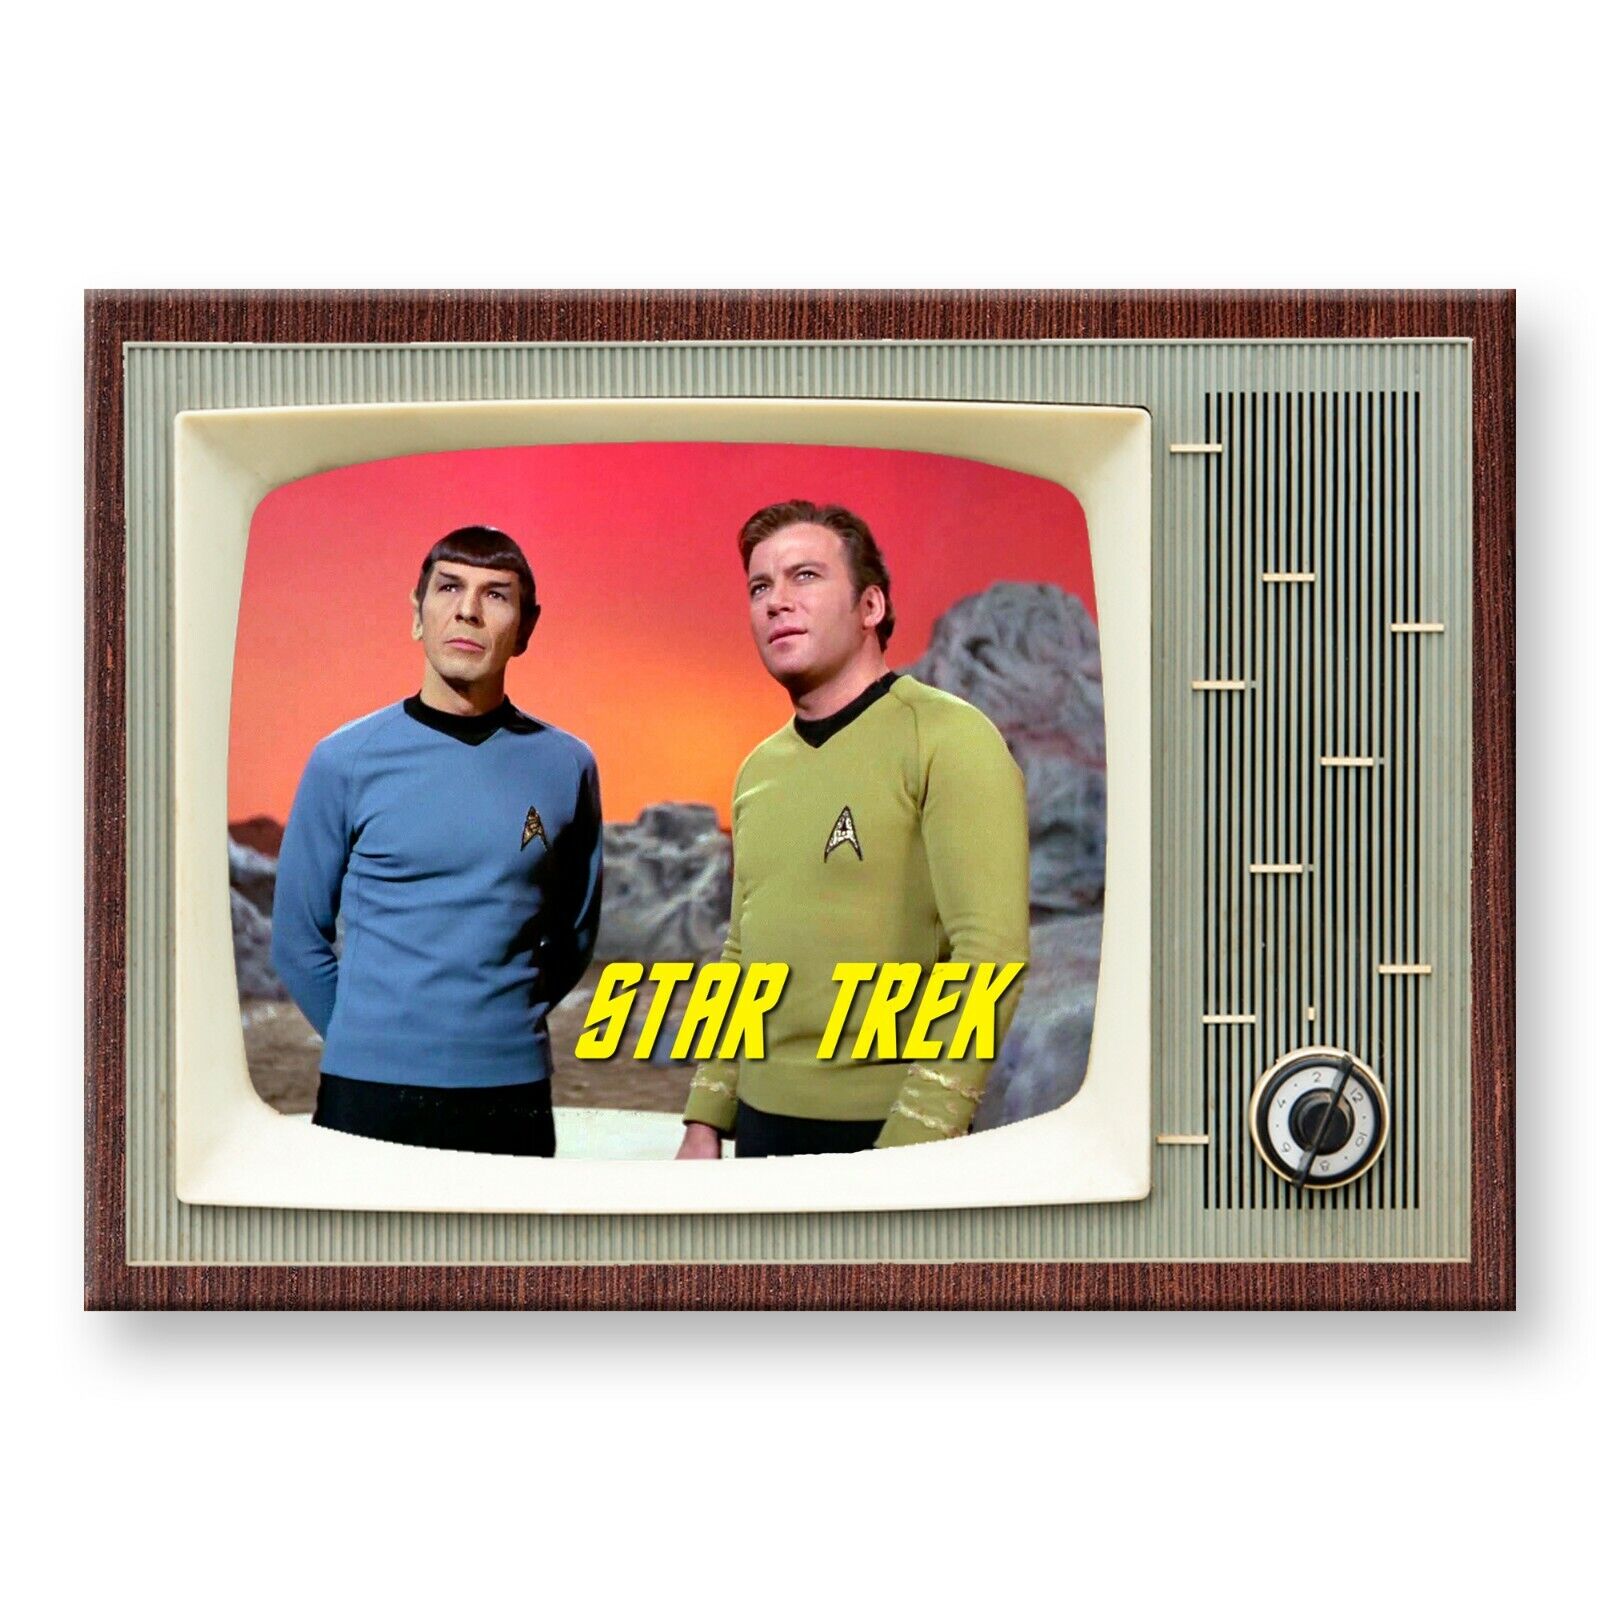 STAR TREK TV Show Classic Retro TV 3.5 inches x 2.5 inches FRIDGE MAGNET